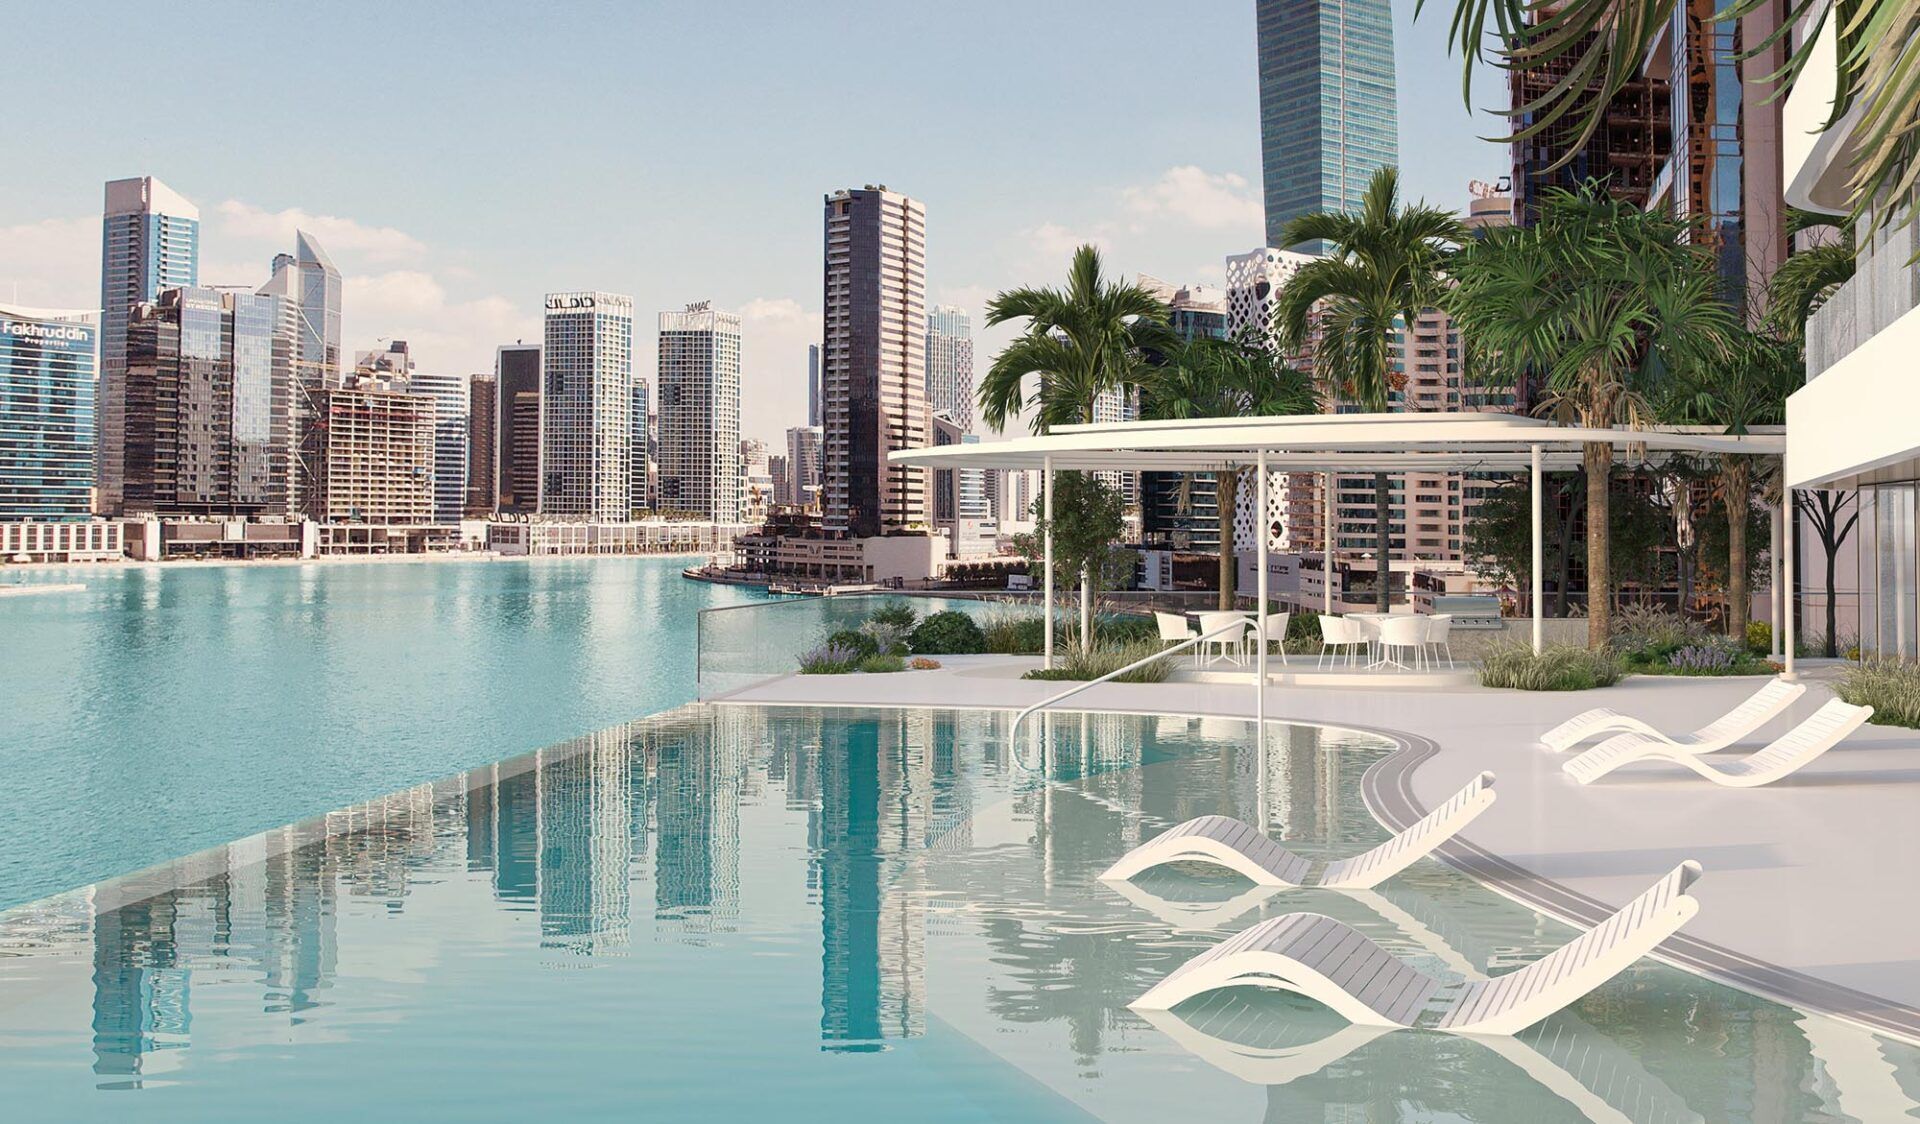 Vendita Appartamenti Dubai Ultra-Lusso | luxforsale.it